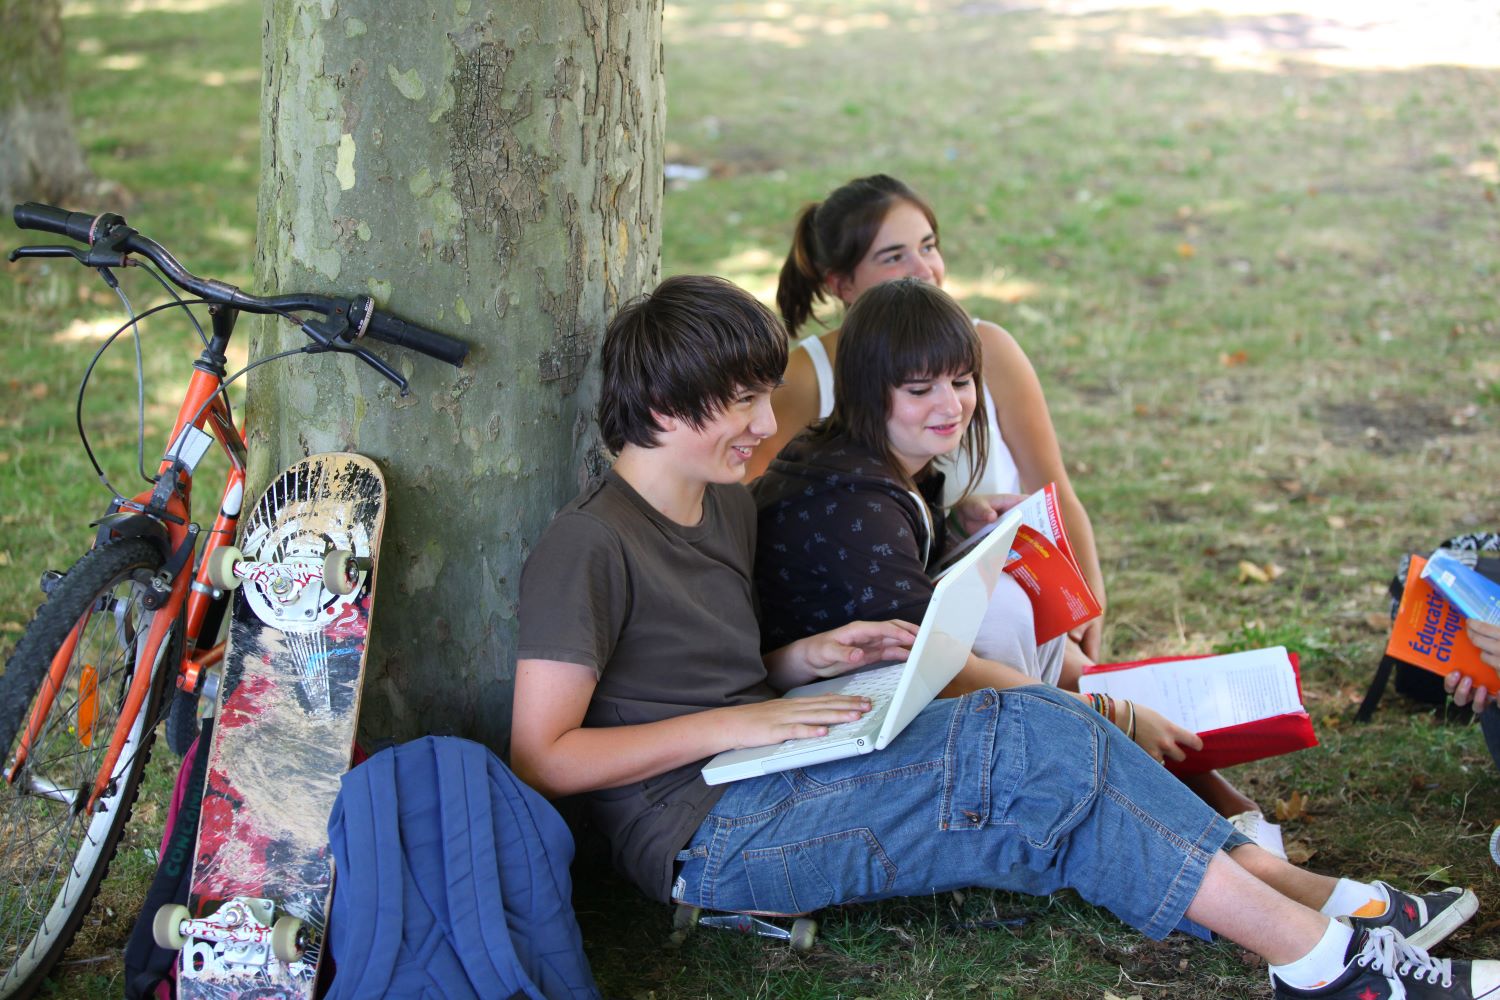 Glada tonåringar sitter på gräsmatta lutade mot en trädstam.